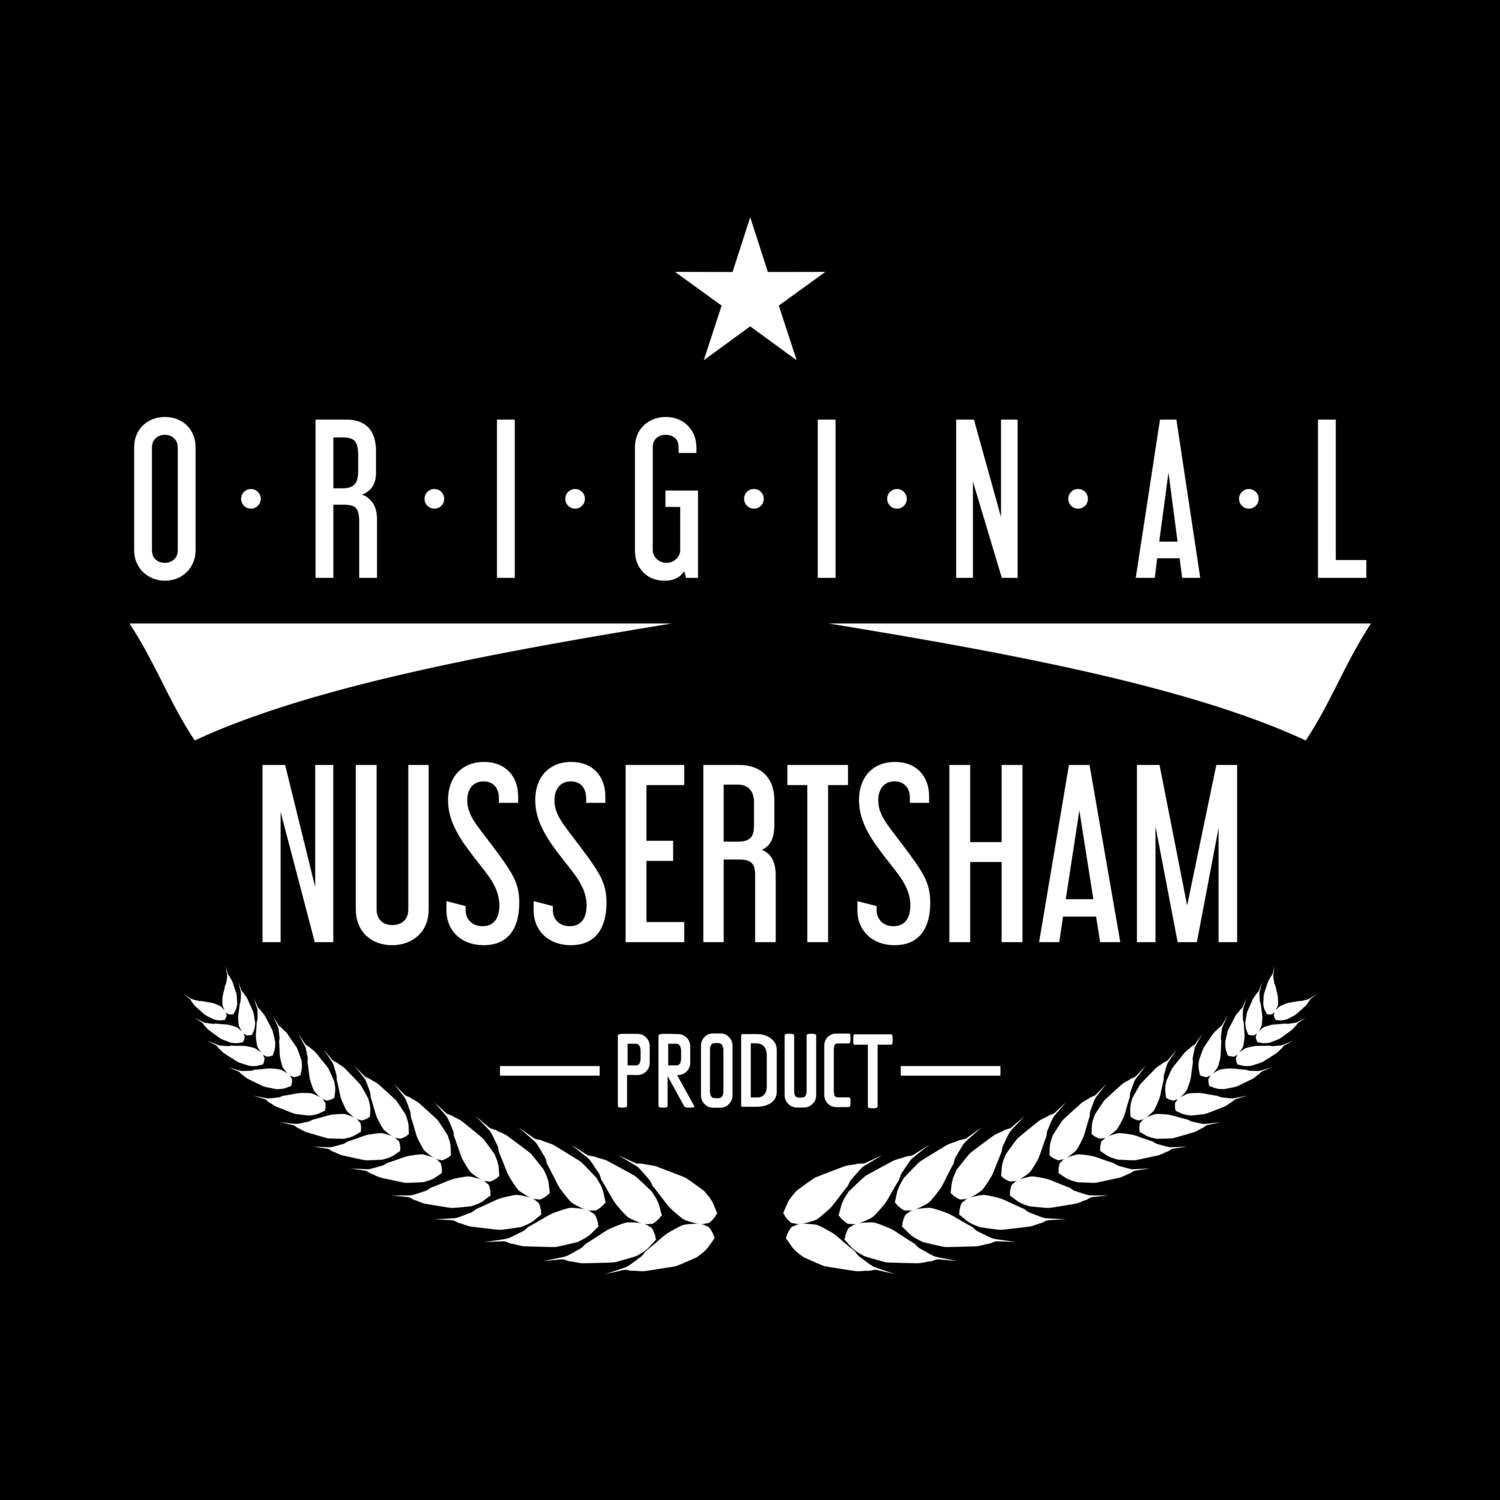 Nussertsham T-Shirt »Original Product«